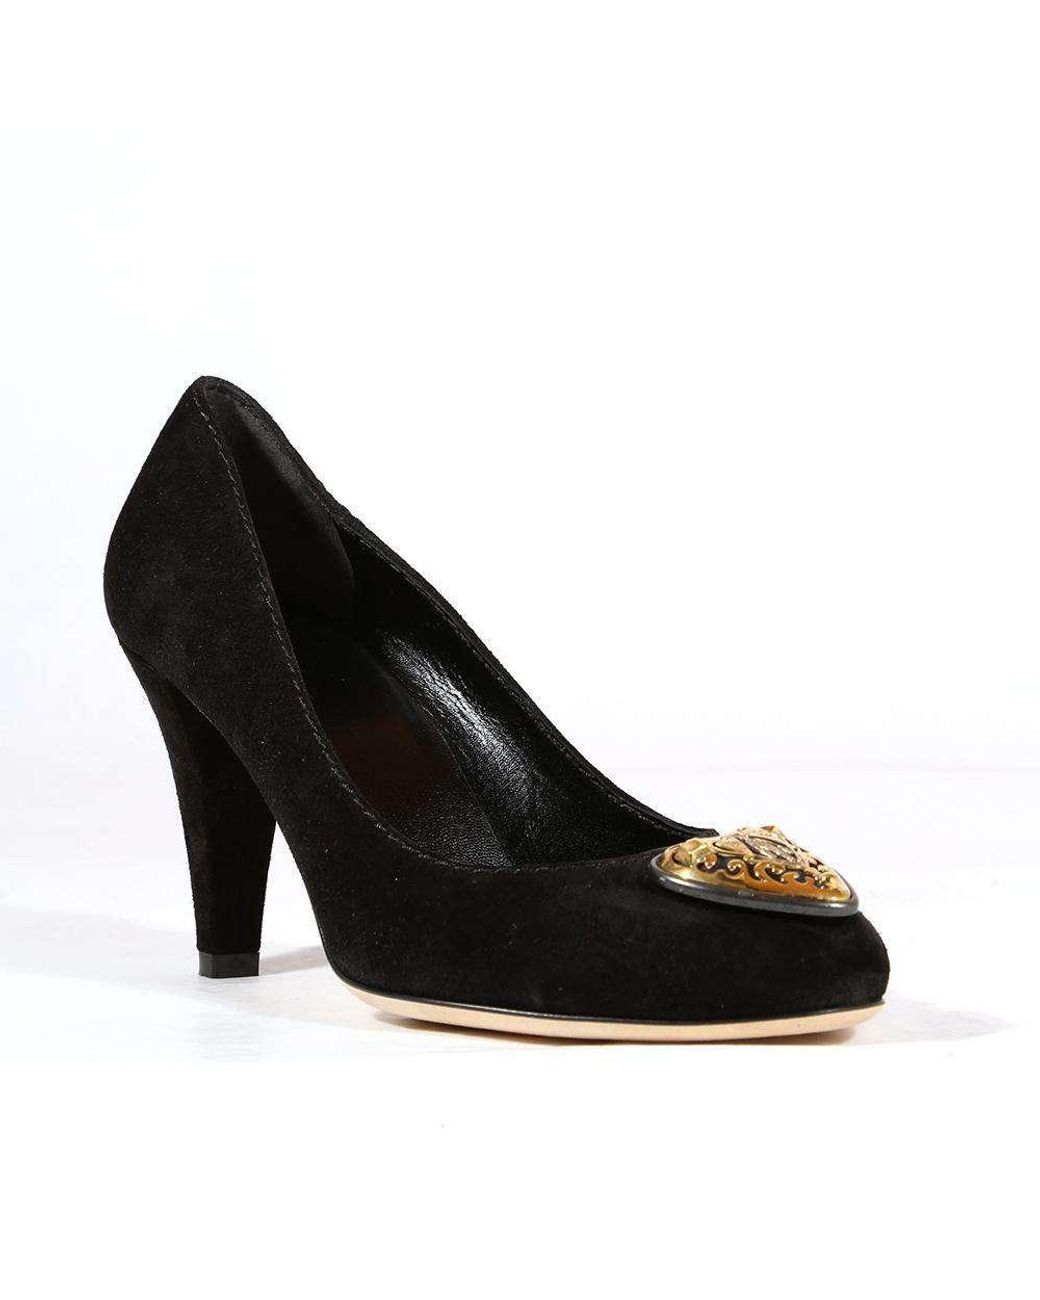 Designer shoes Nine West black peep toe high heels size 8